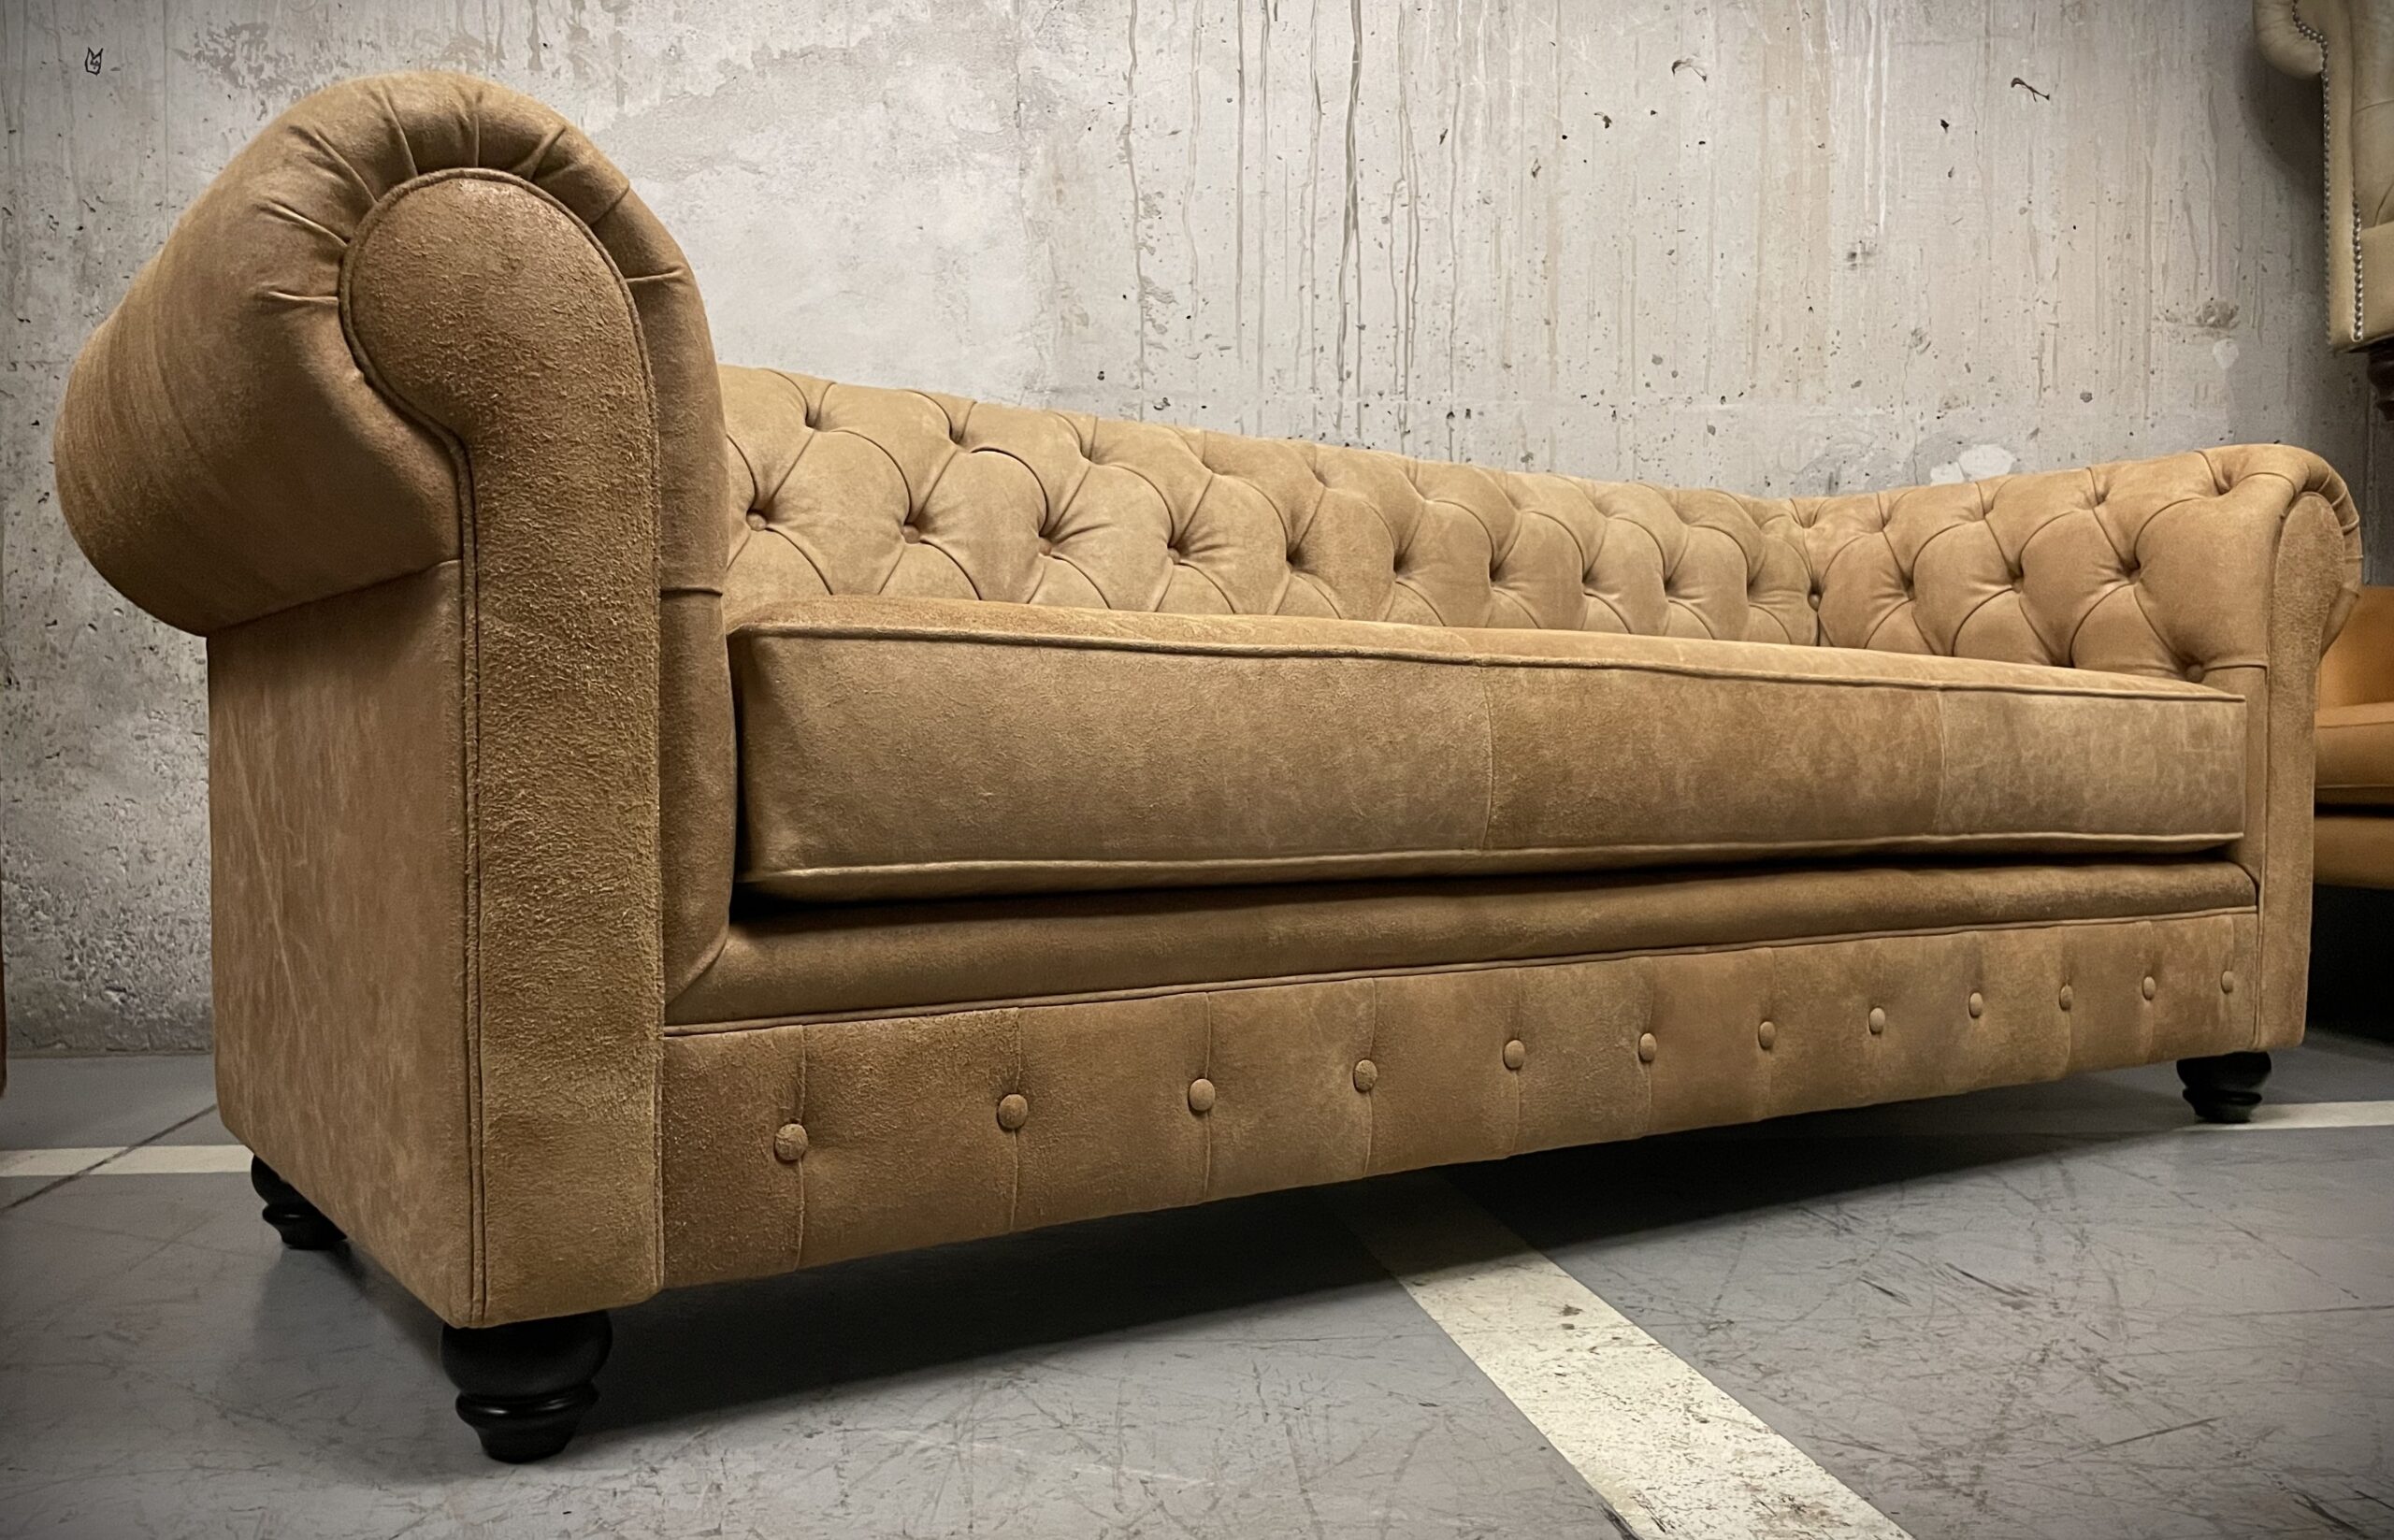 Sofa de Cuero- Chesterfield Color Distroi Oak, 240cm de frente, Cojín único asiento, tres costuras, Respaldo Recto Clásico, Cuero 100% Natural Uruguayo 6